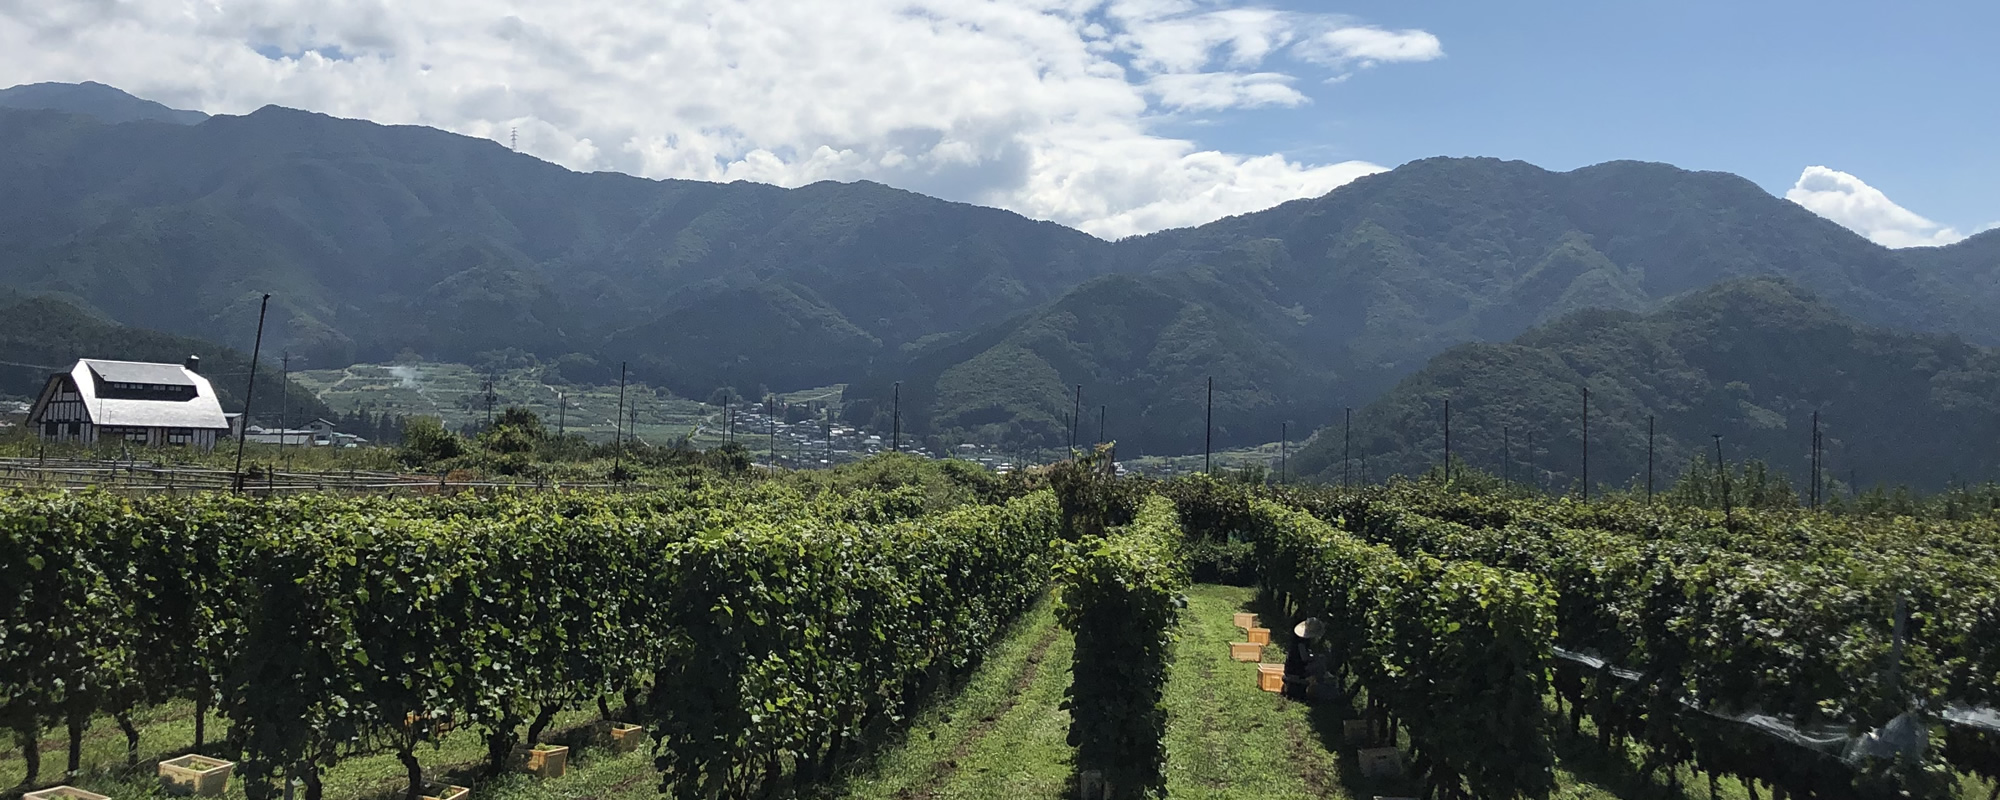 Reve de Vin信州高山ワインメイン画像4